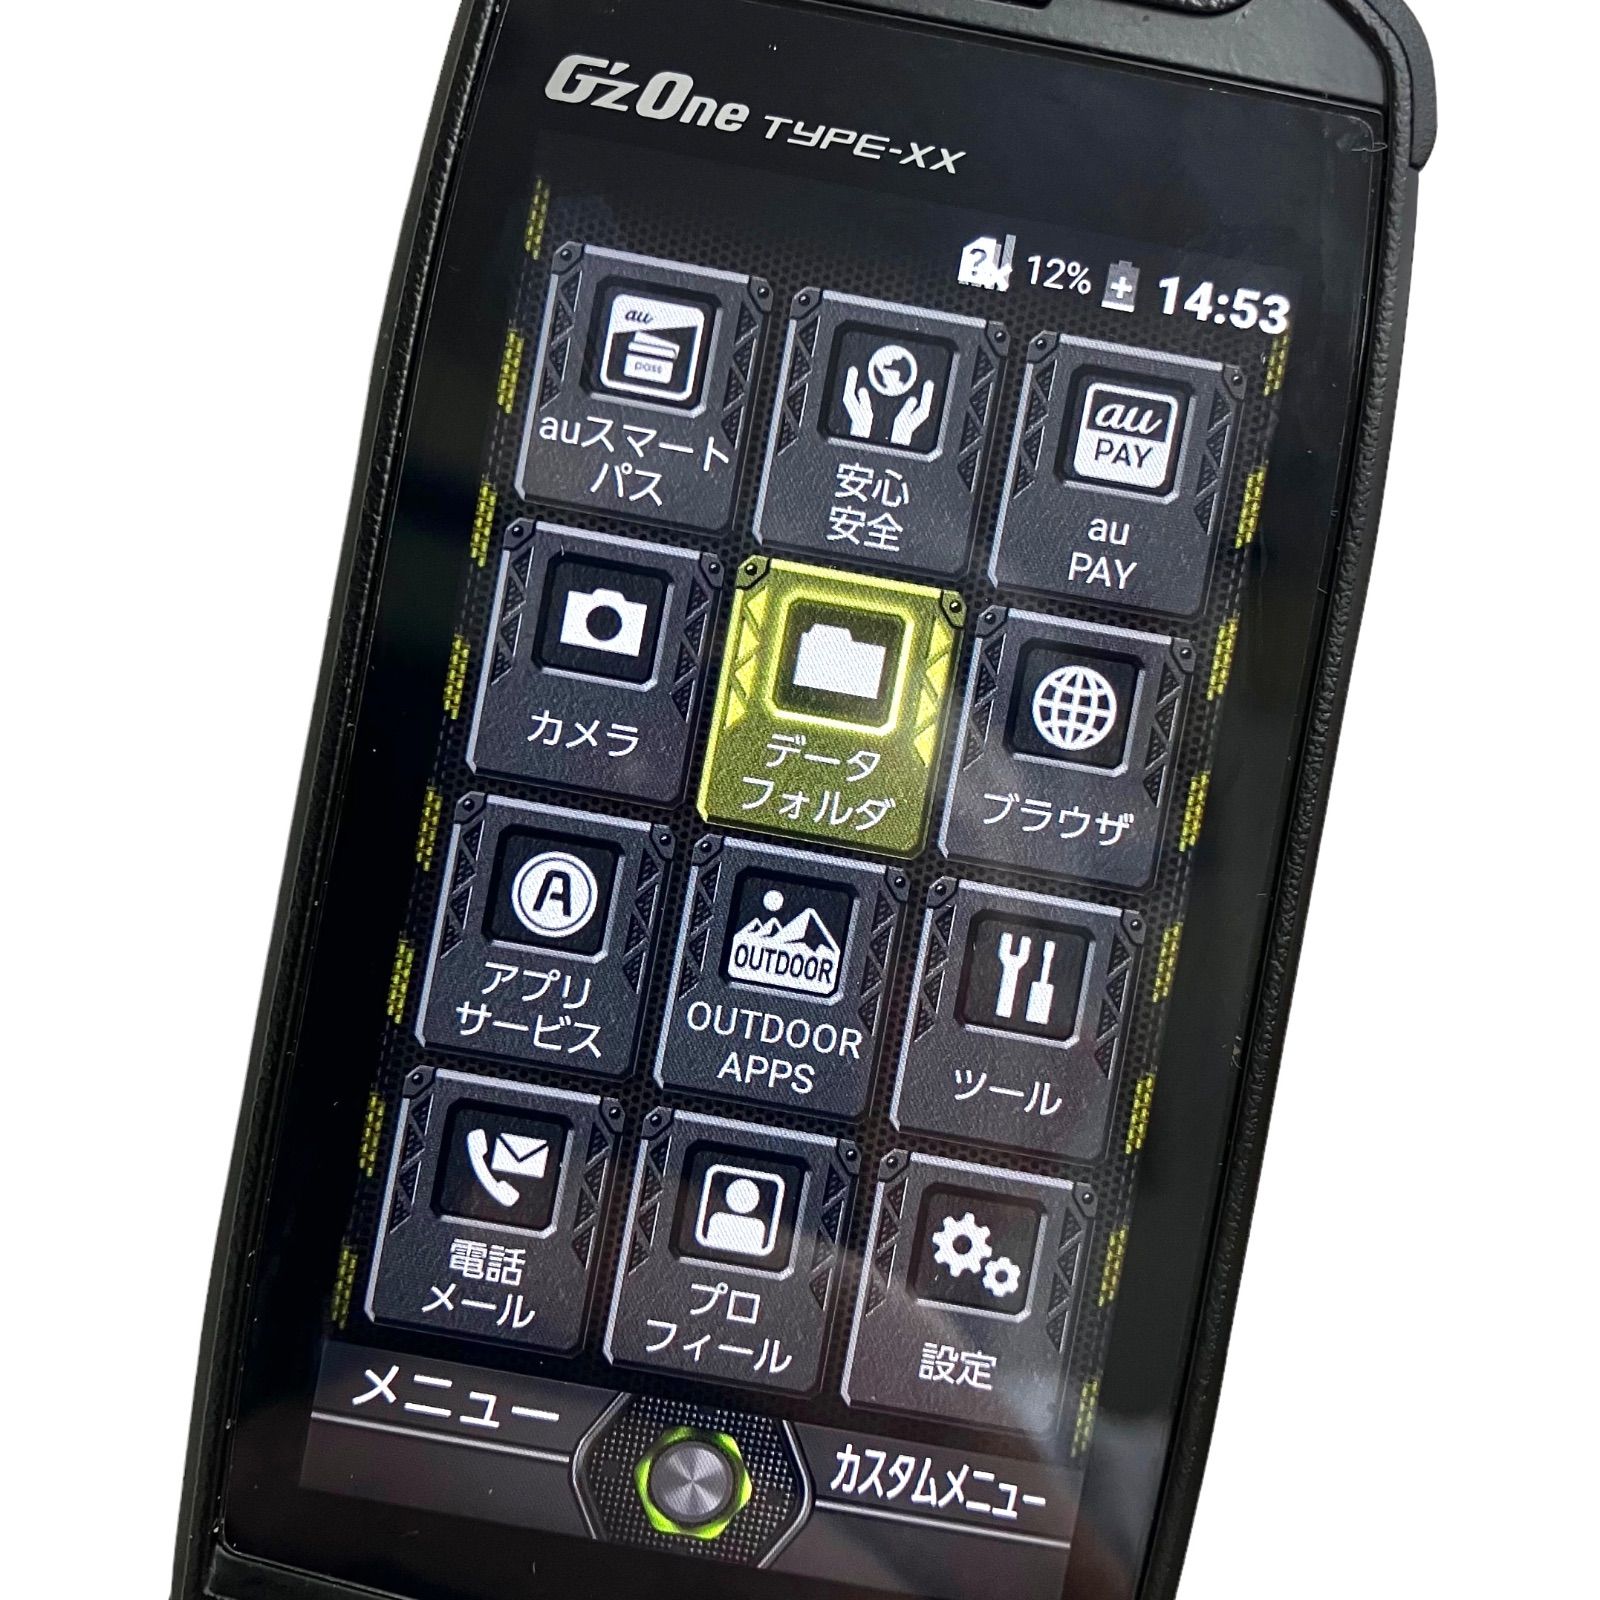 G'zOne TYPE-XX ブラック - 携帯電話本体